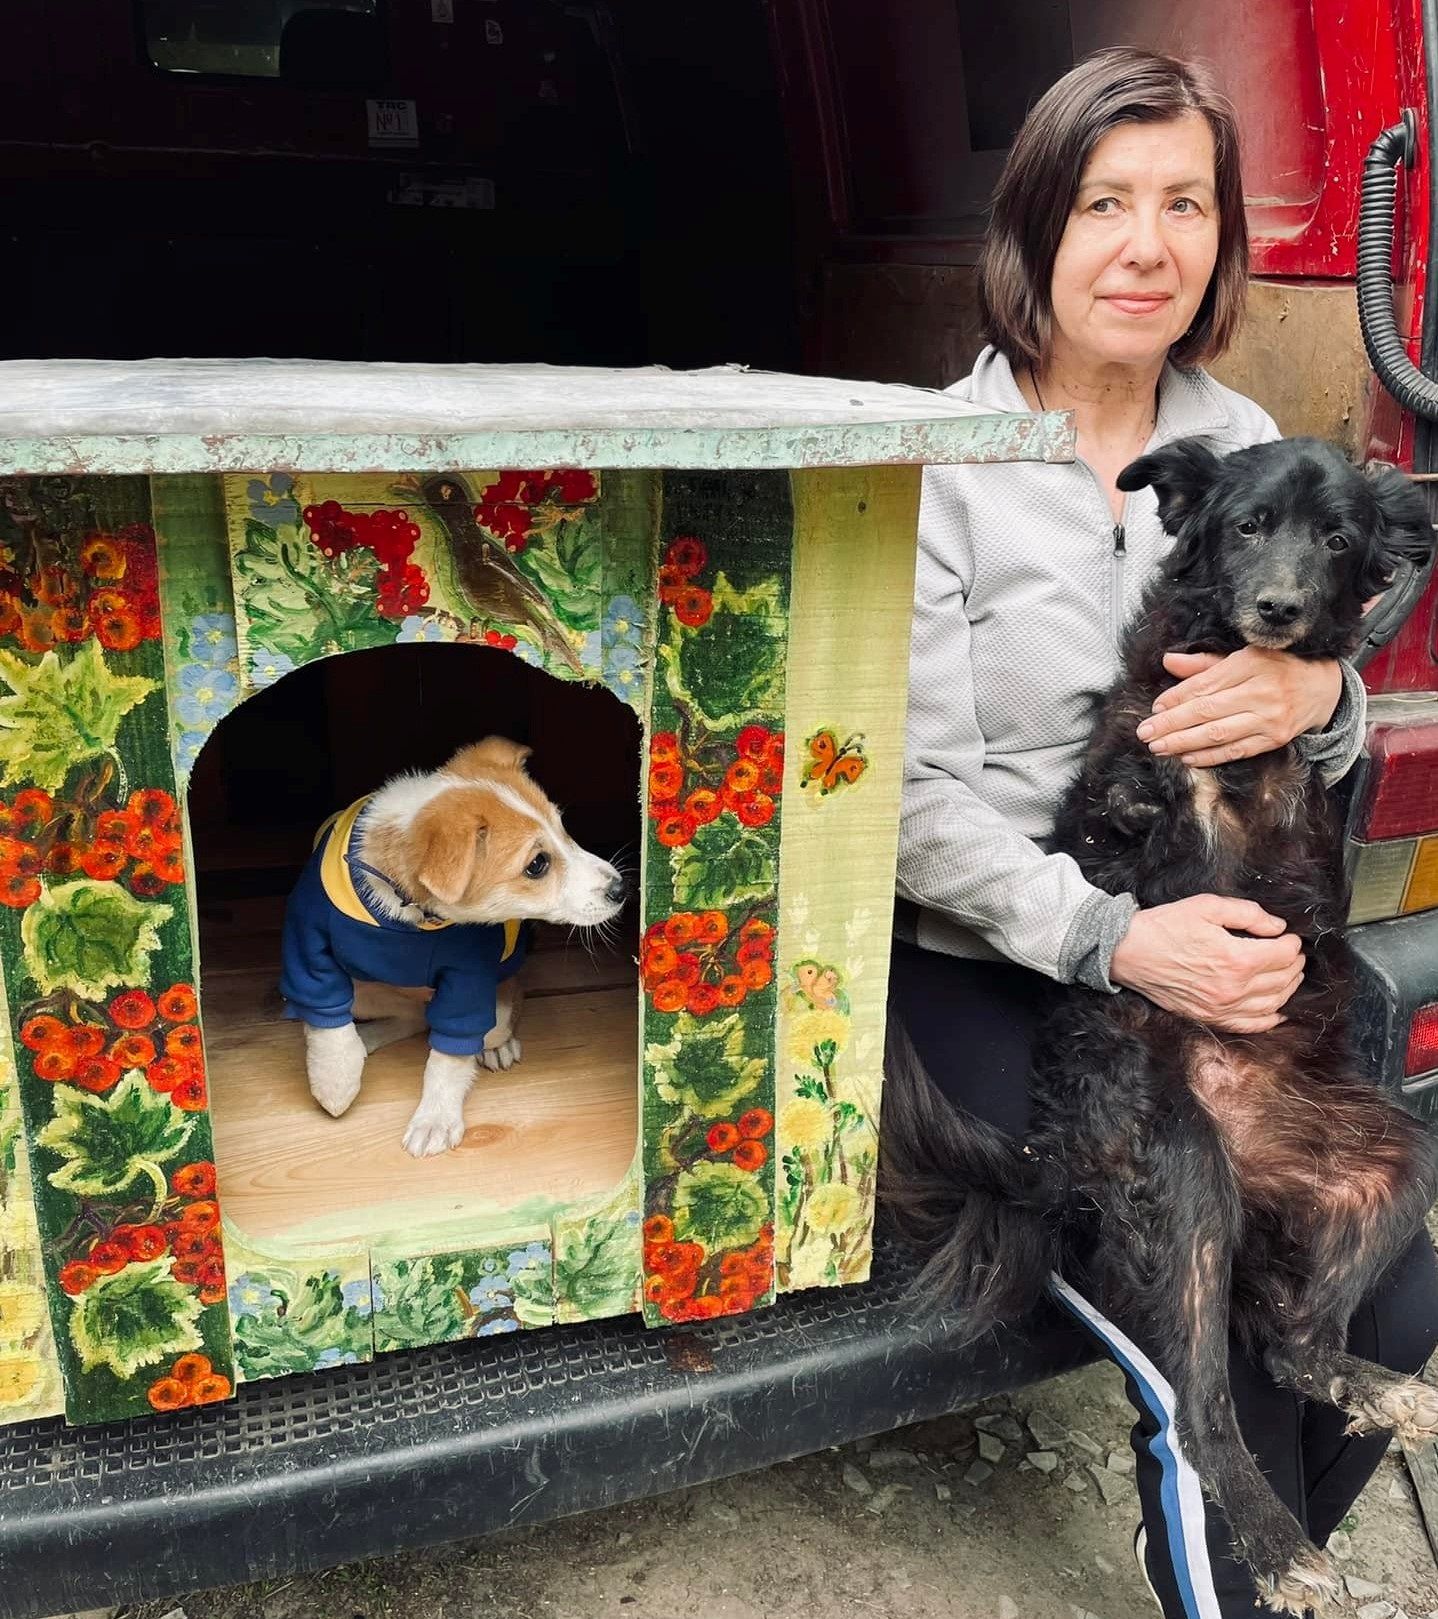 Зоя Воронянська взяла в притулку для бездомних тварин собачу будку, а повернула,  вважай, справжній шедевр.